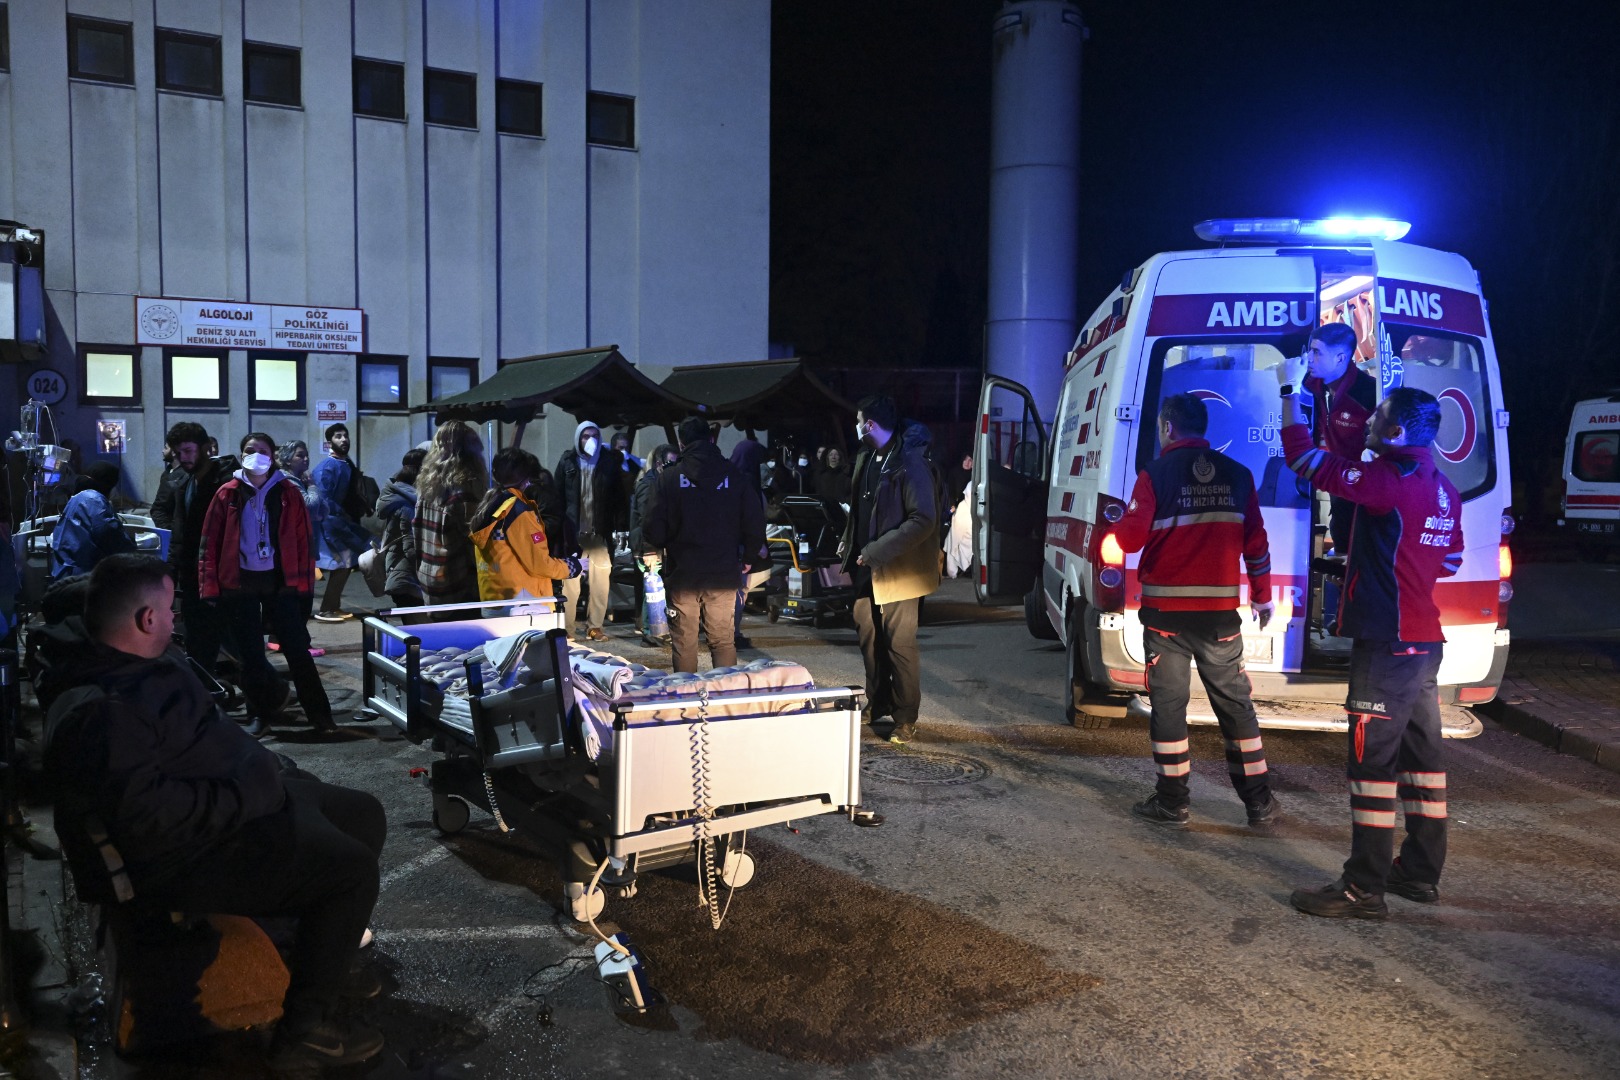 Üsküdar'da hastane yangını: 1 kişi hayatını kaybetti!